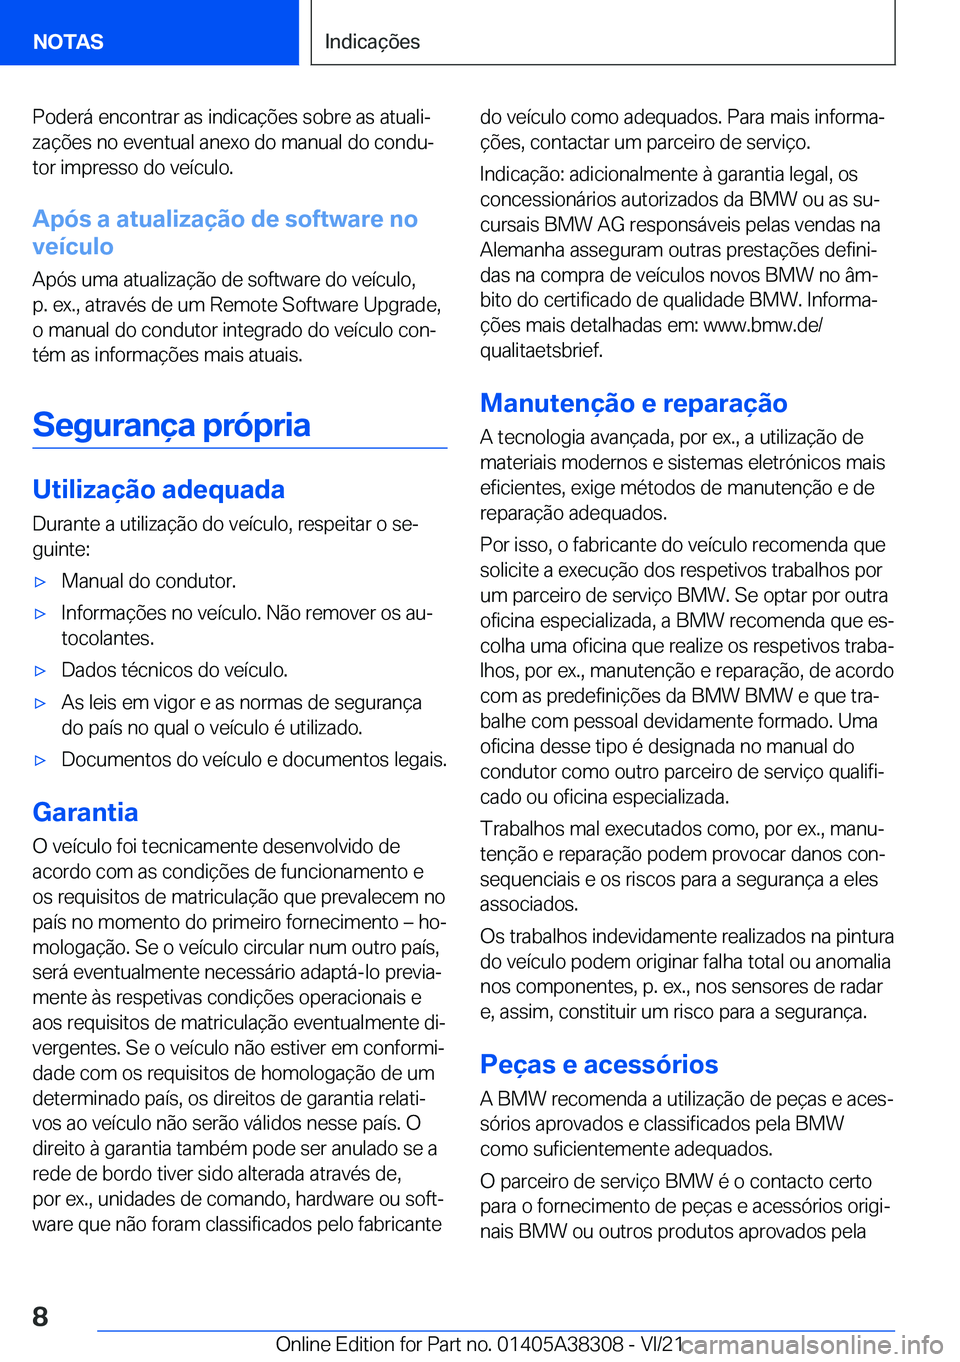 BMW 2 SERIES GRAN COUPE 2022  Manual do condutor (in Portuguese) �P�o�d�e�r�á��e�n�c�o�n�t�r�a�r��a�s��i�n�d�i�c�a�